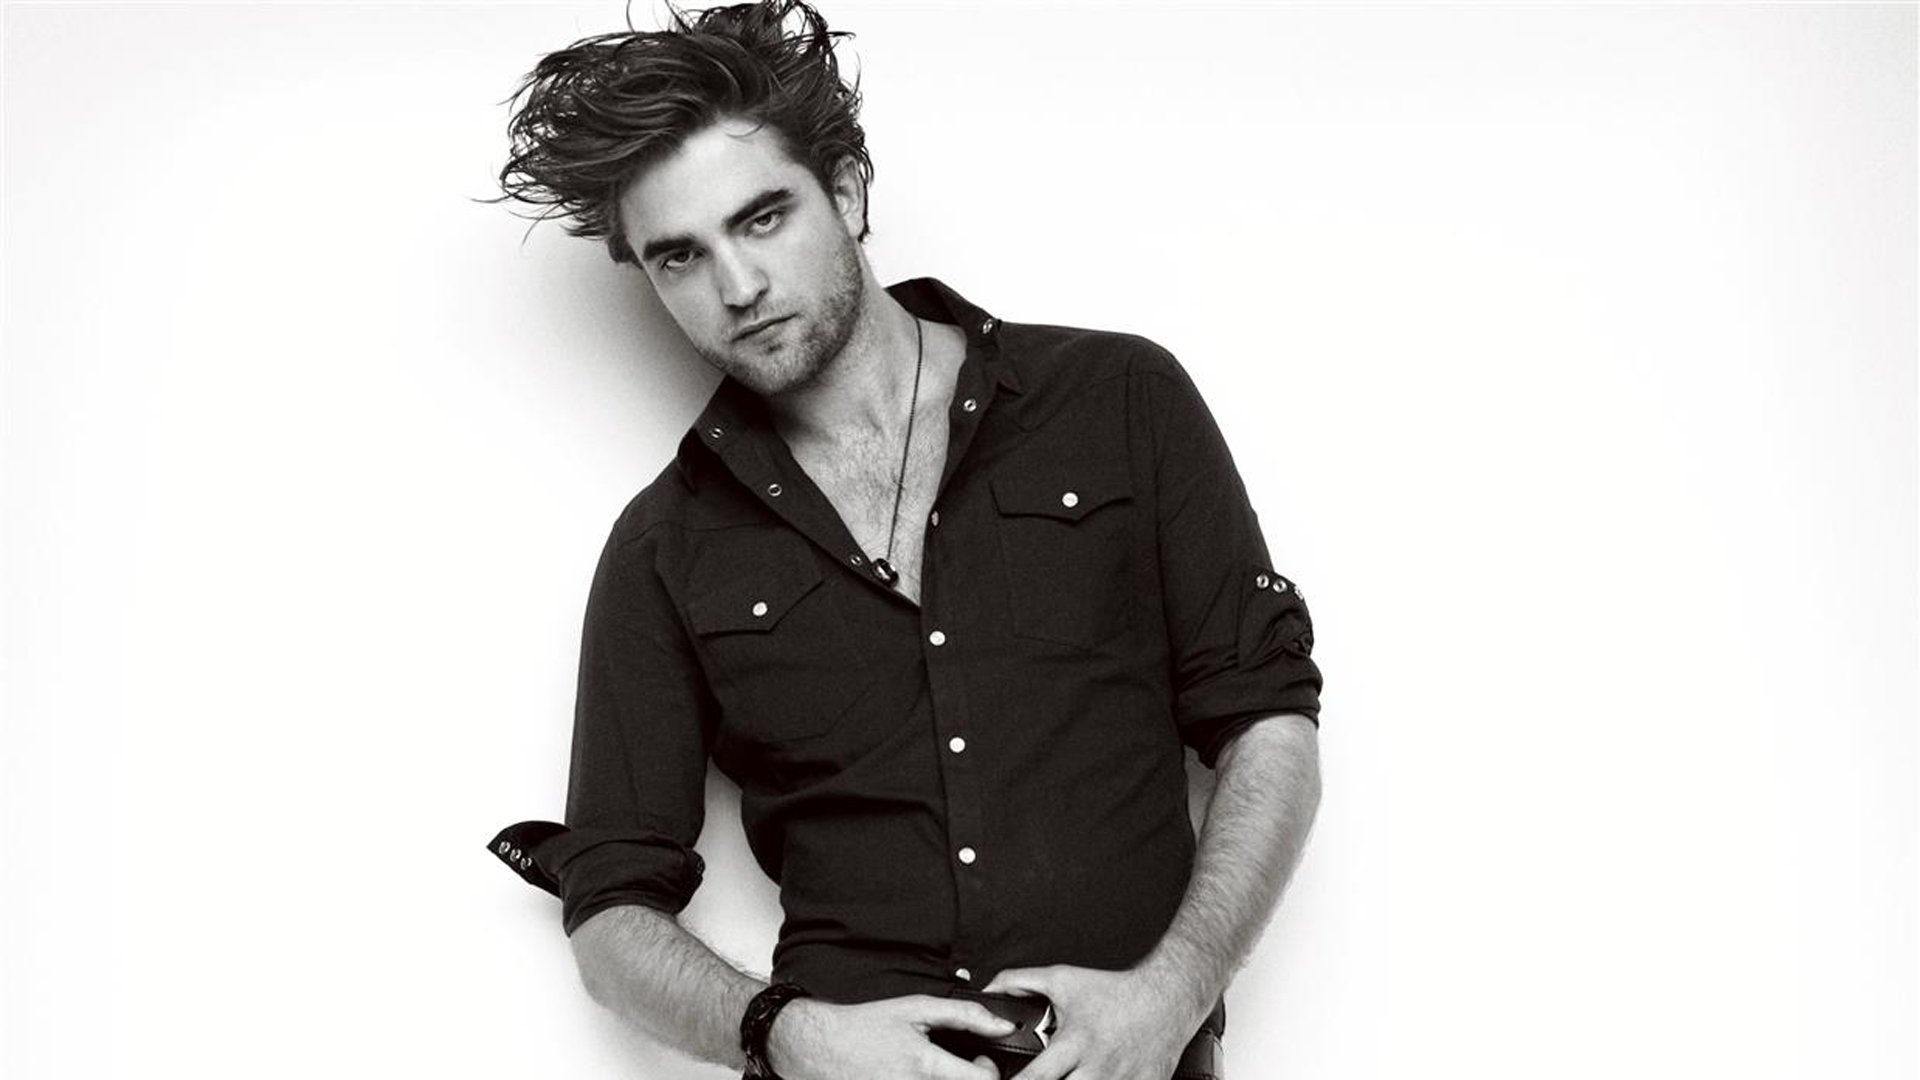 Robert Pattinson Hd Wallpaper , HD Wallpaper & Backgrounds